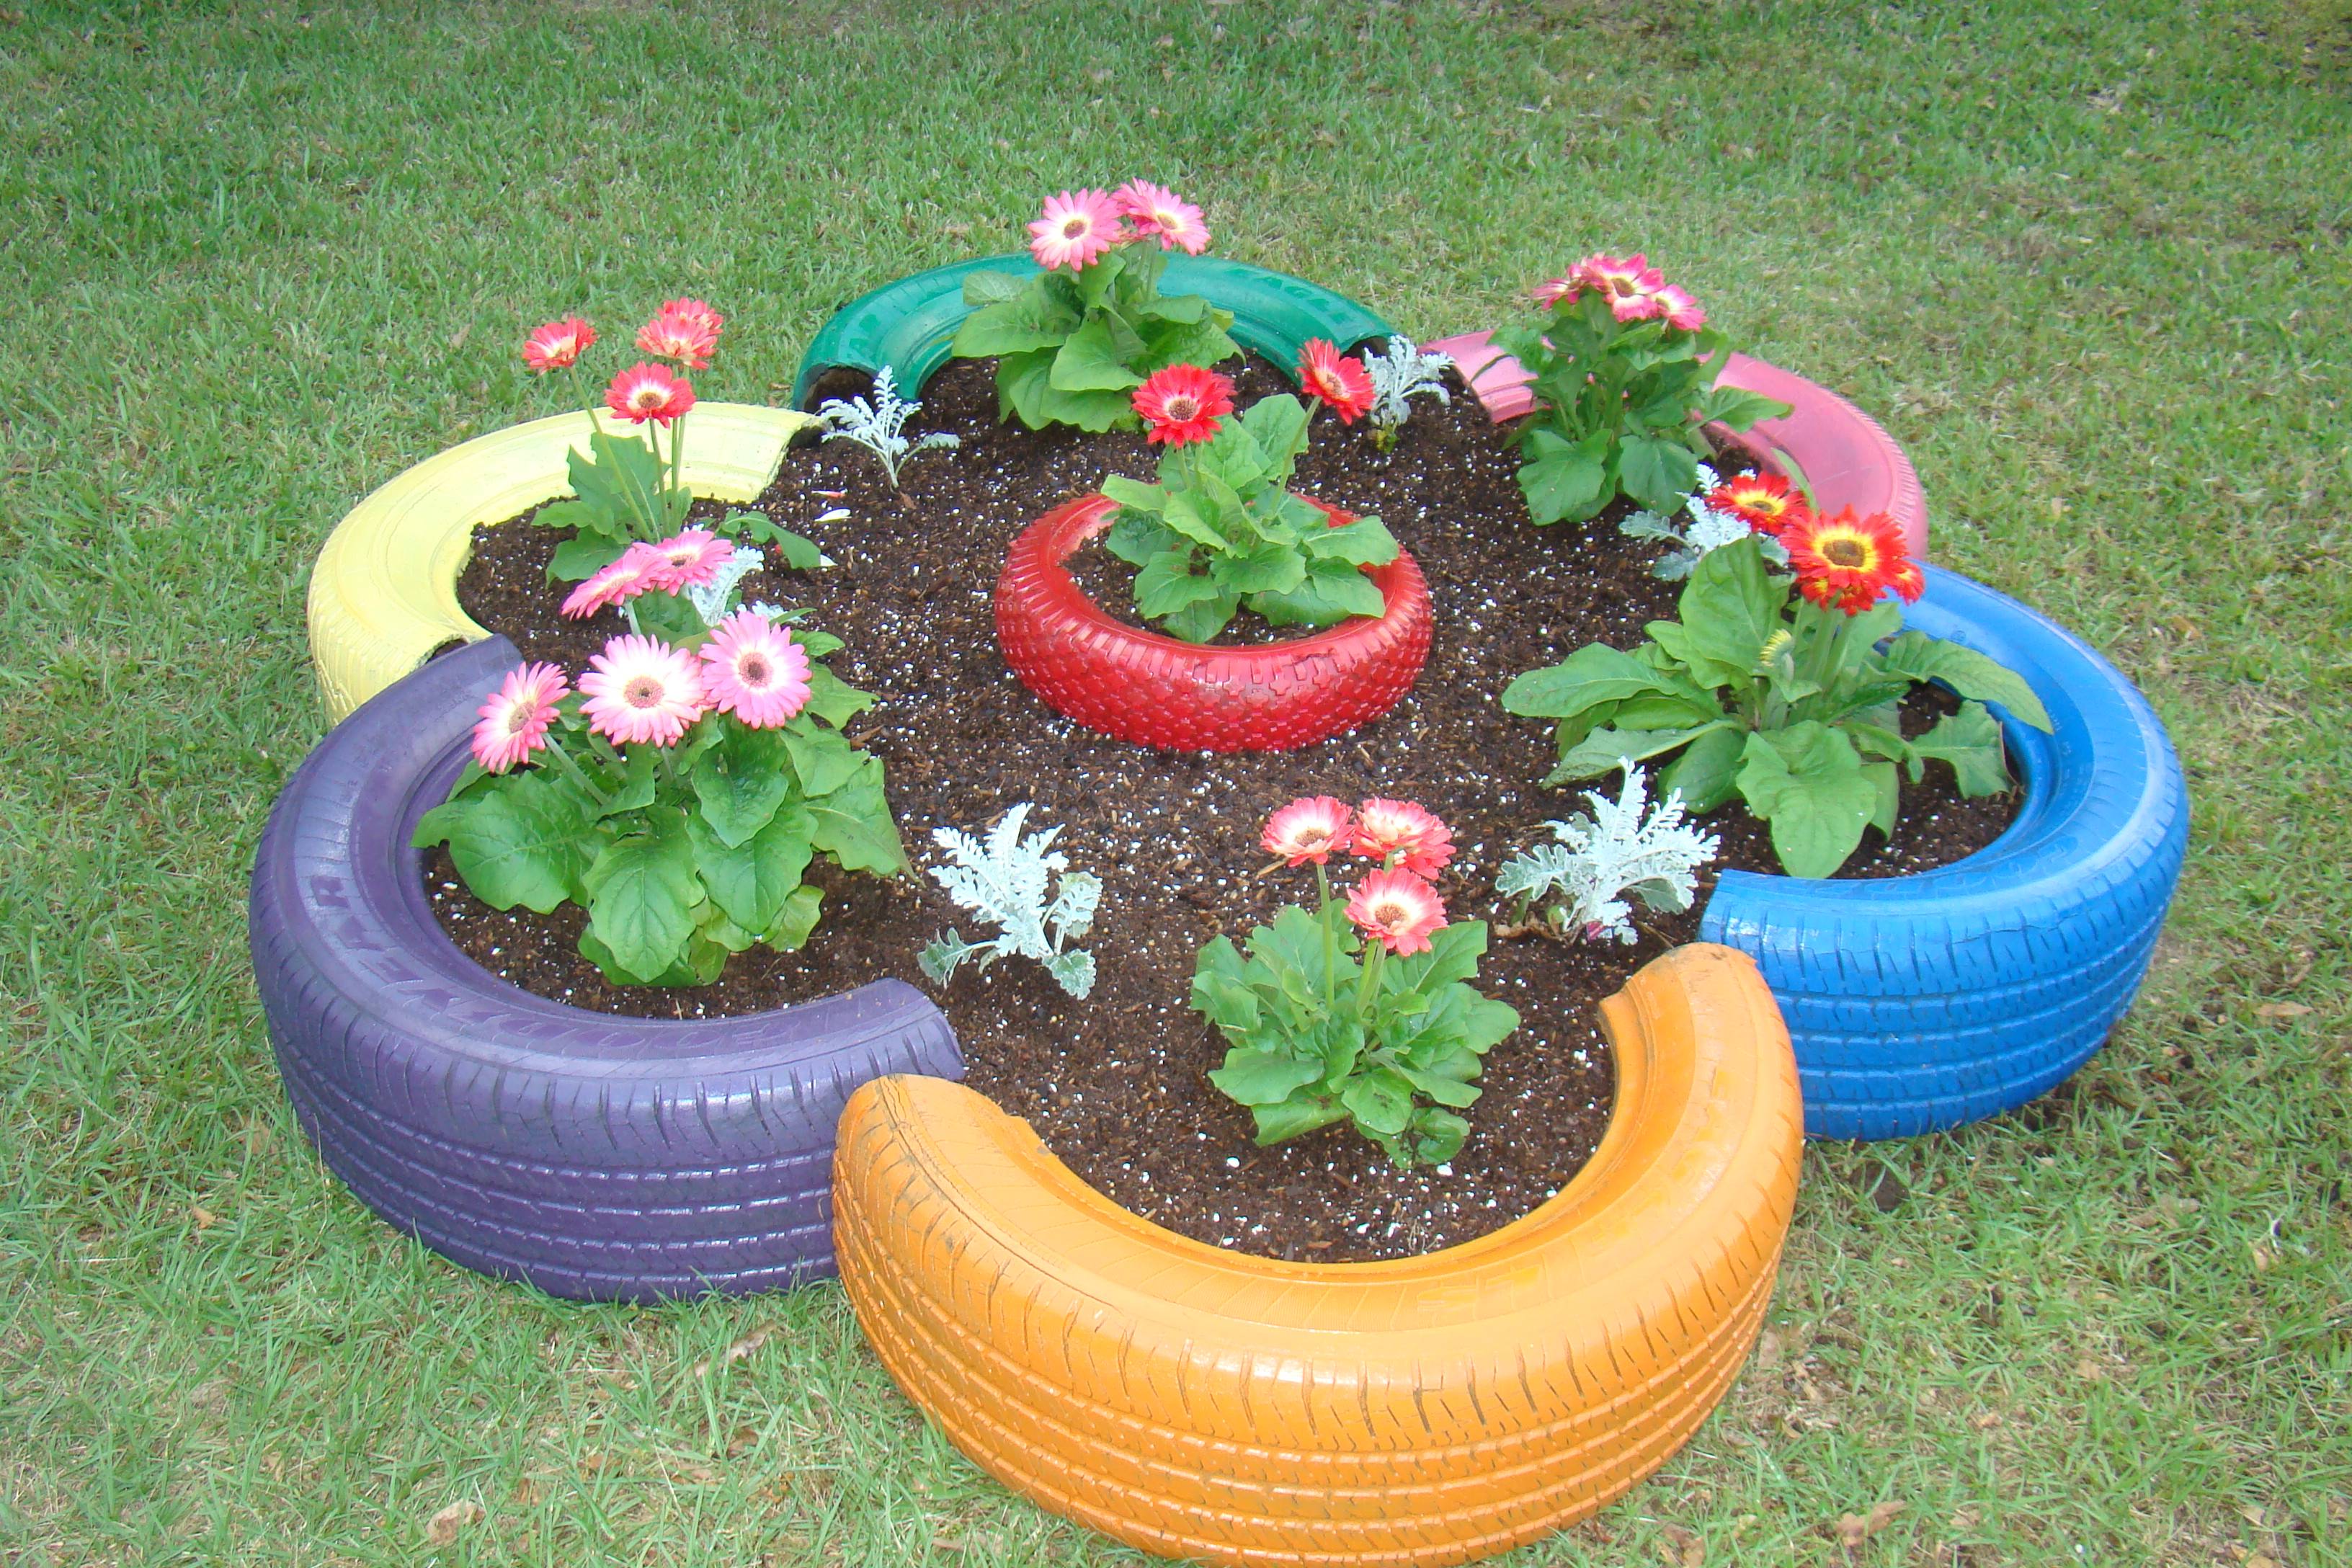 The Tire Garden